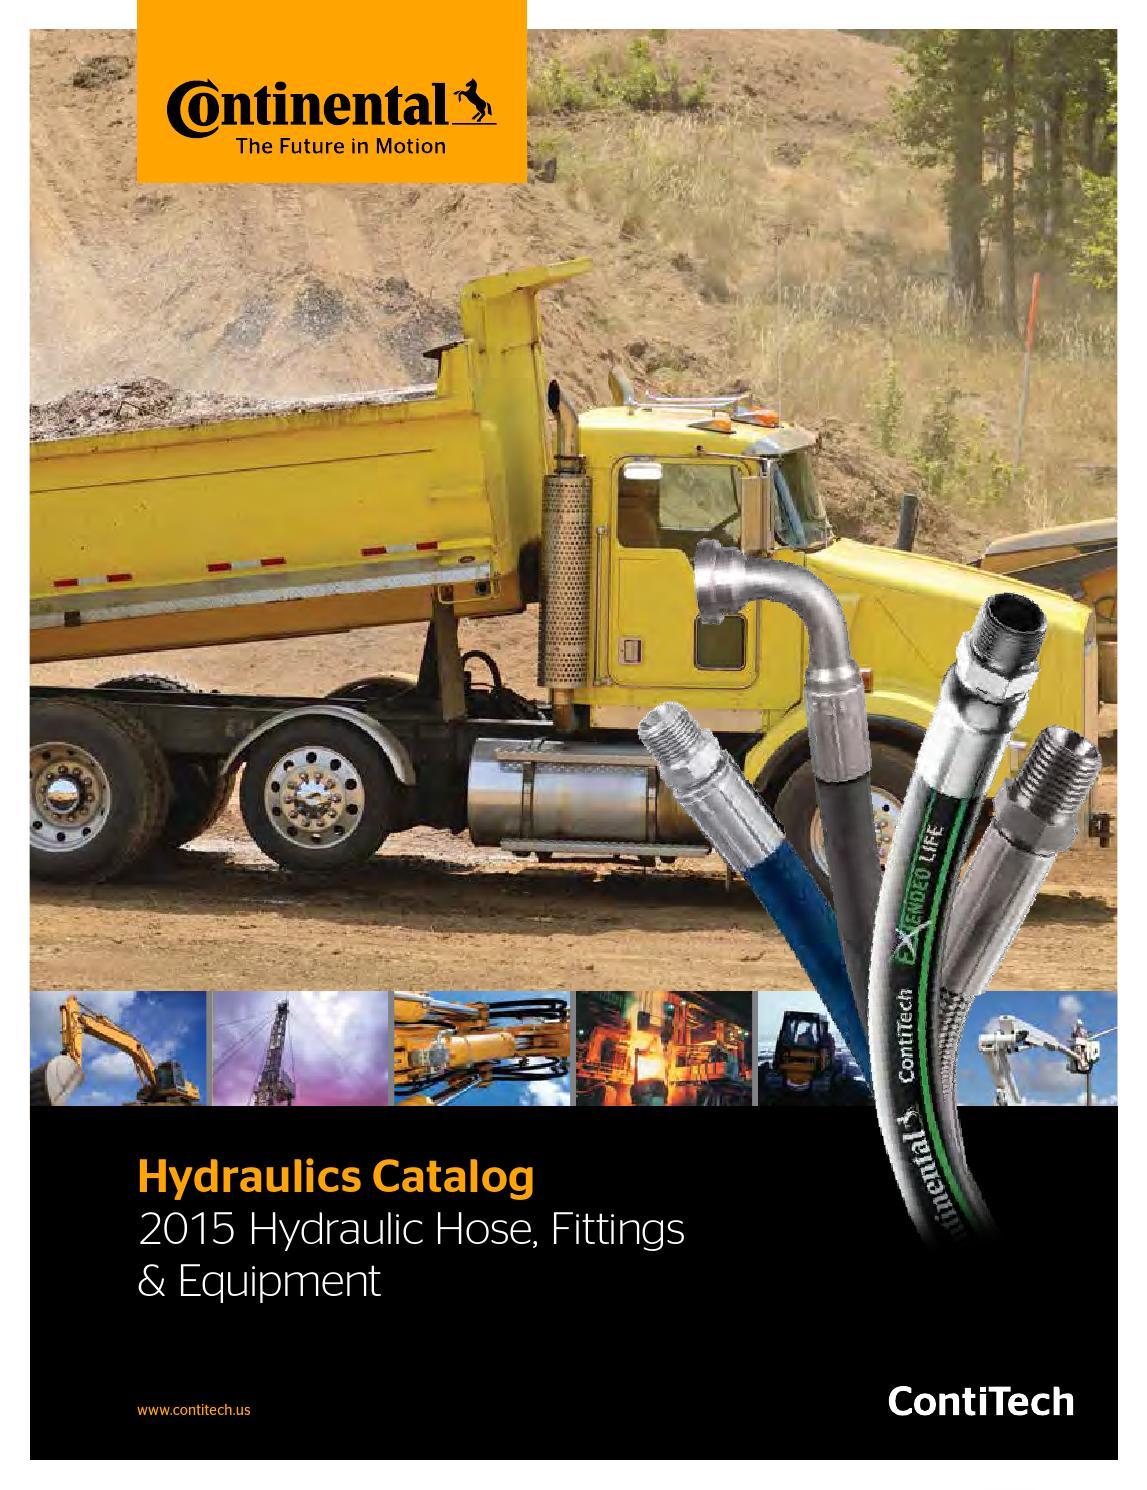 Continental Hydraulic Logo - Continental Hydraulics Catalog 2015 Hydraulic Hose, Fittings